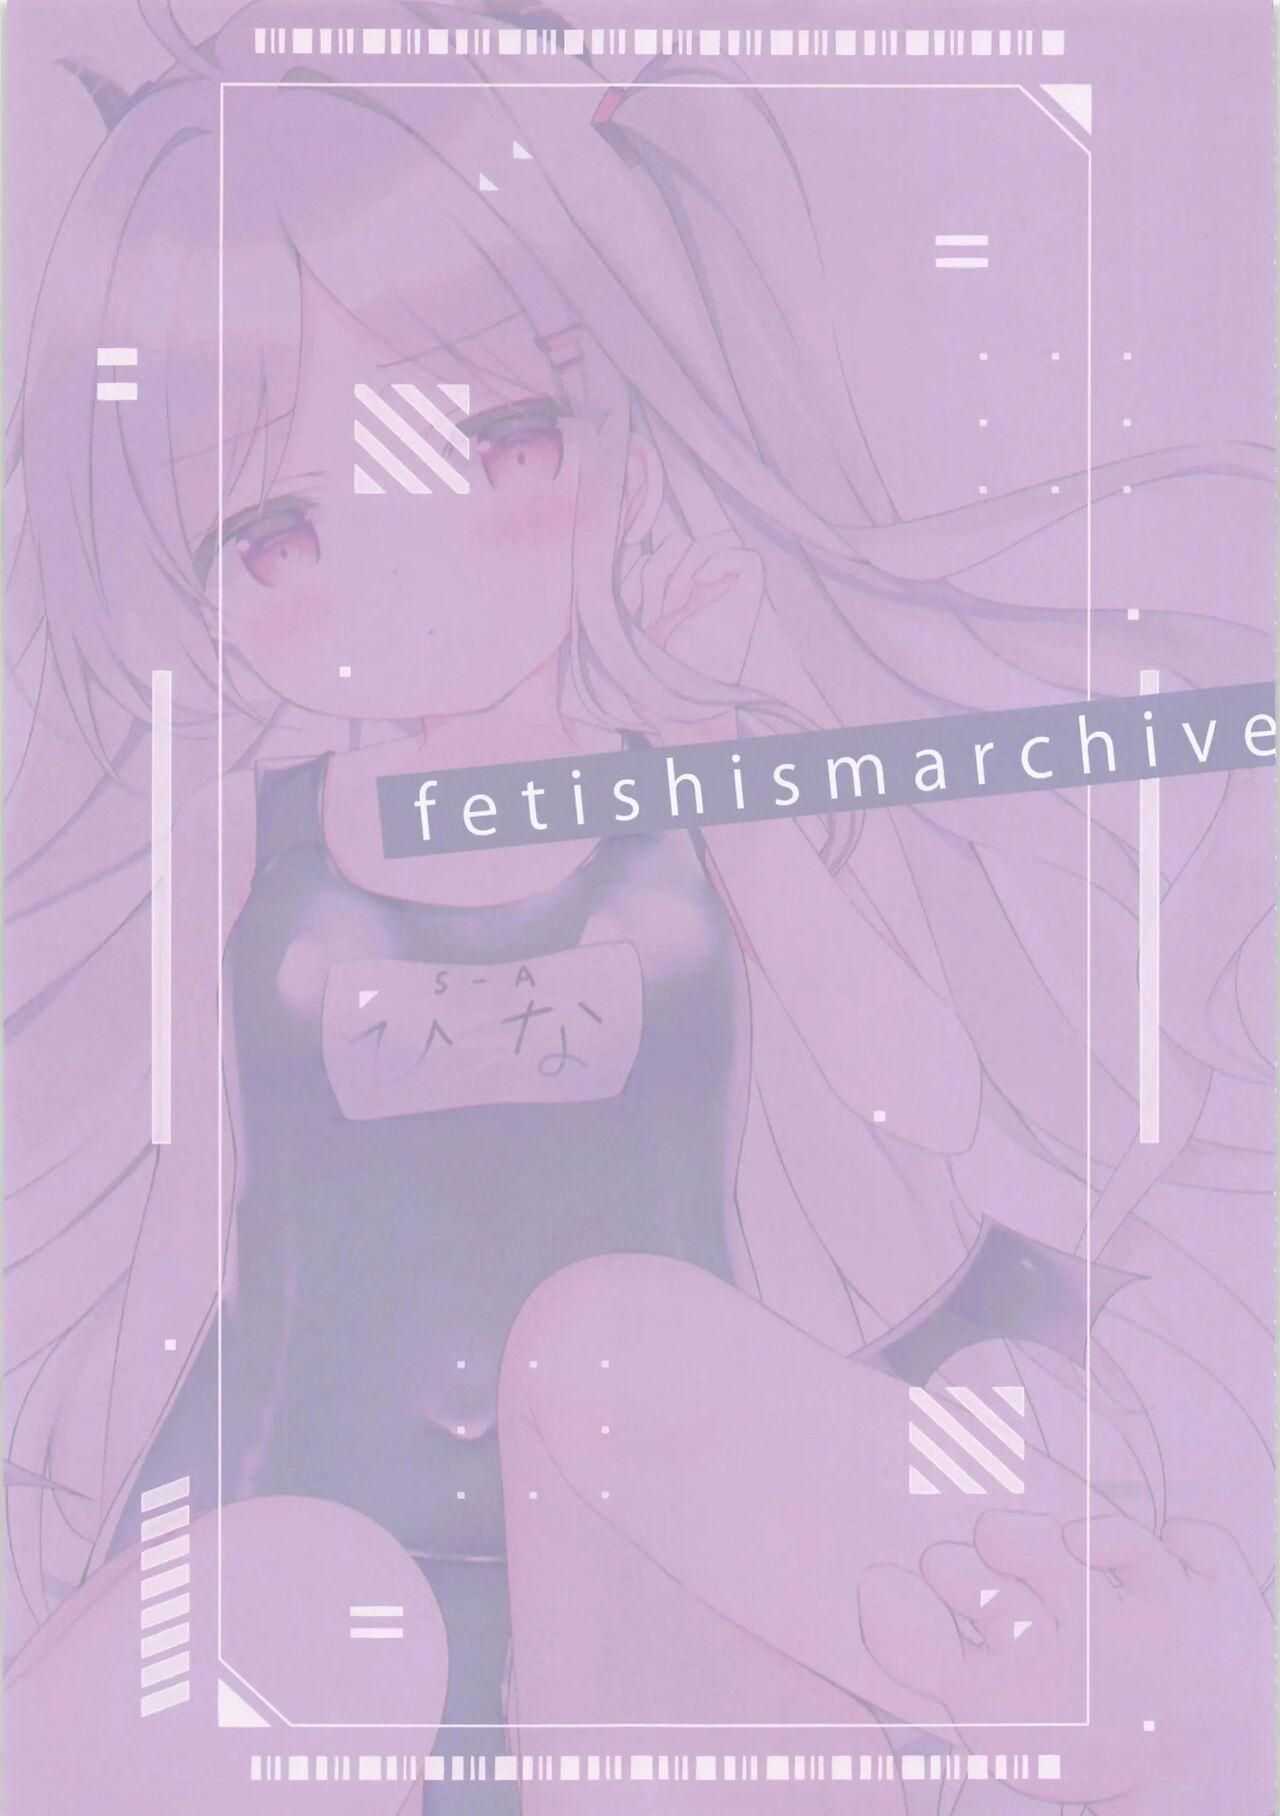 Fetishism Archive 2